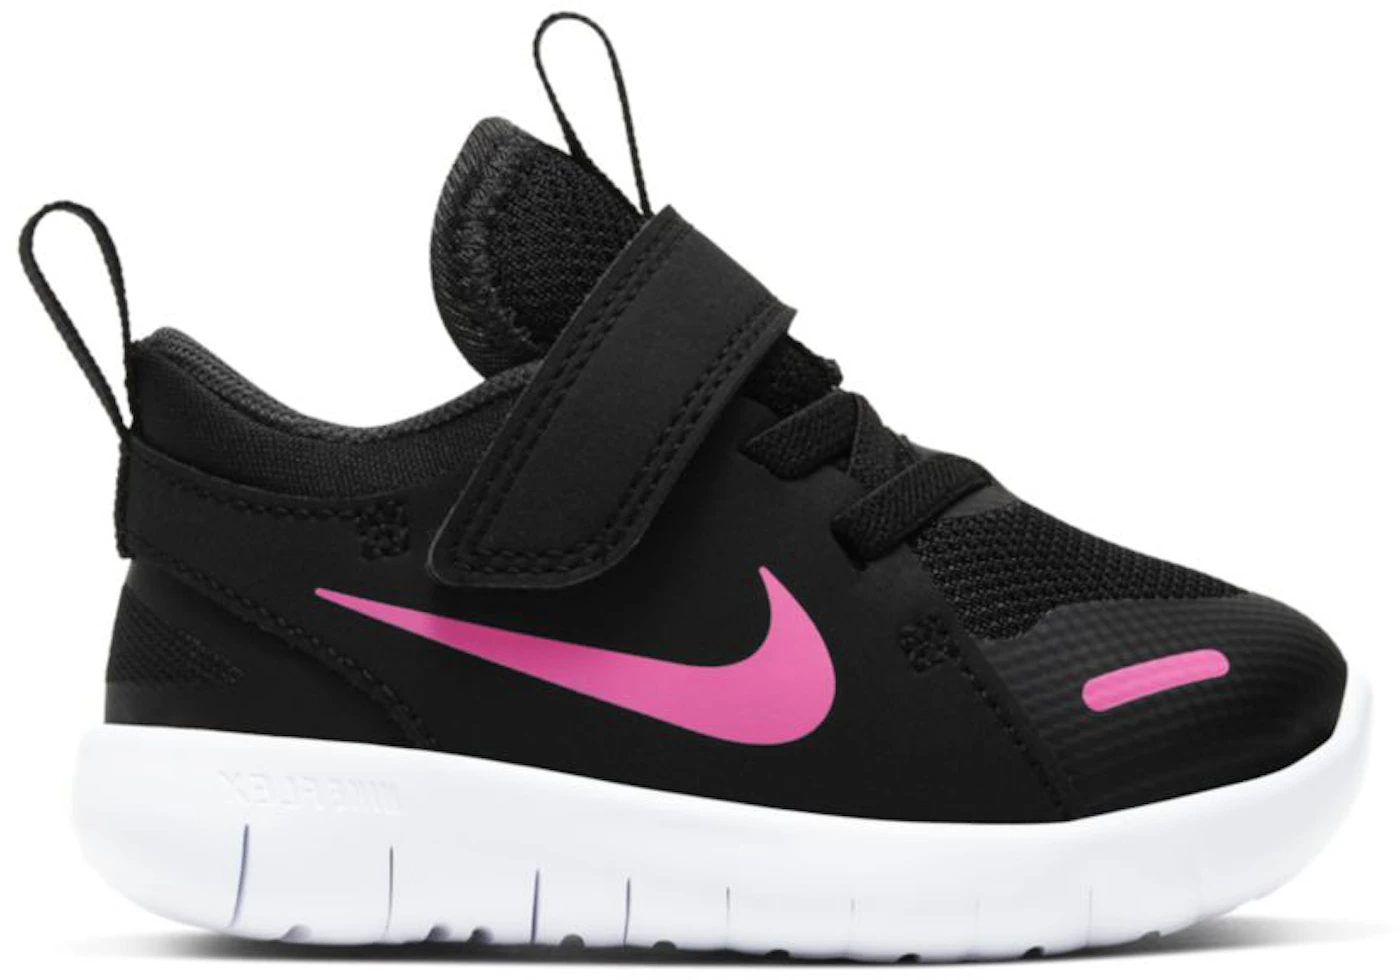 Nike Flex Contact 4 Black Pink Glow (TD) Toddler - CJ2073-002 - US